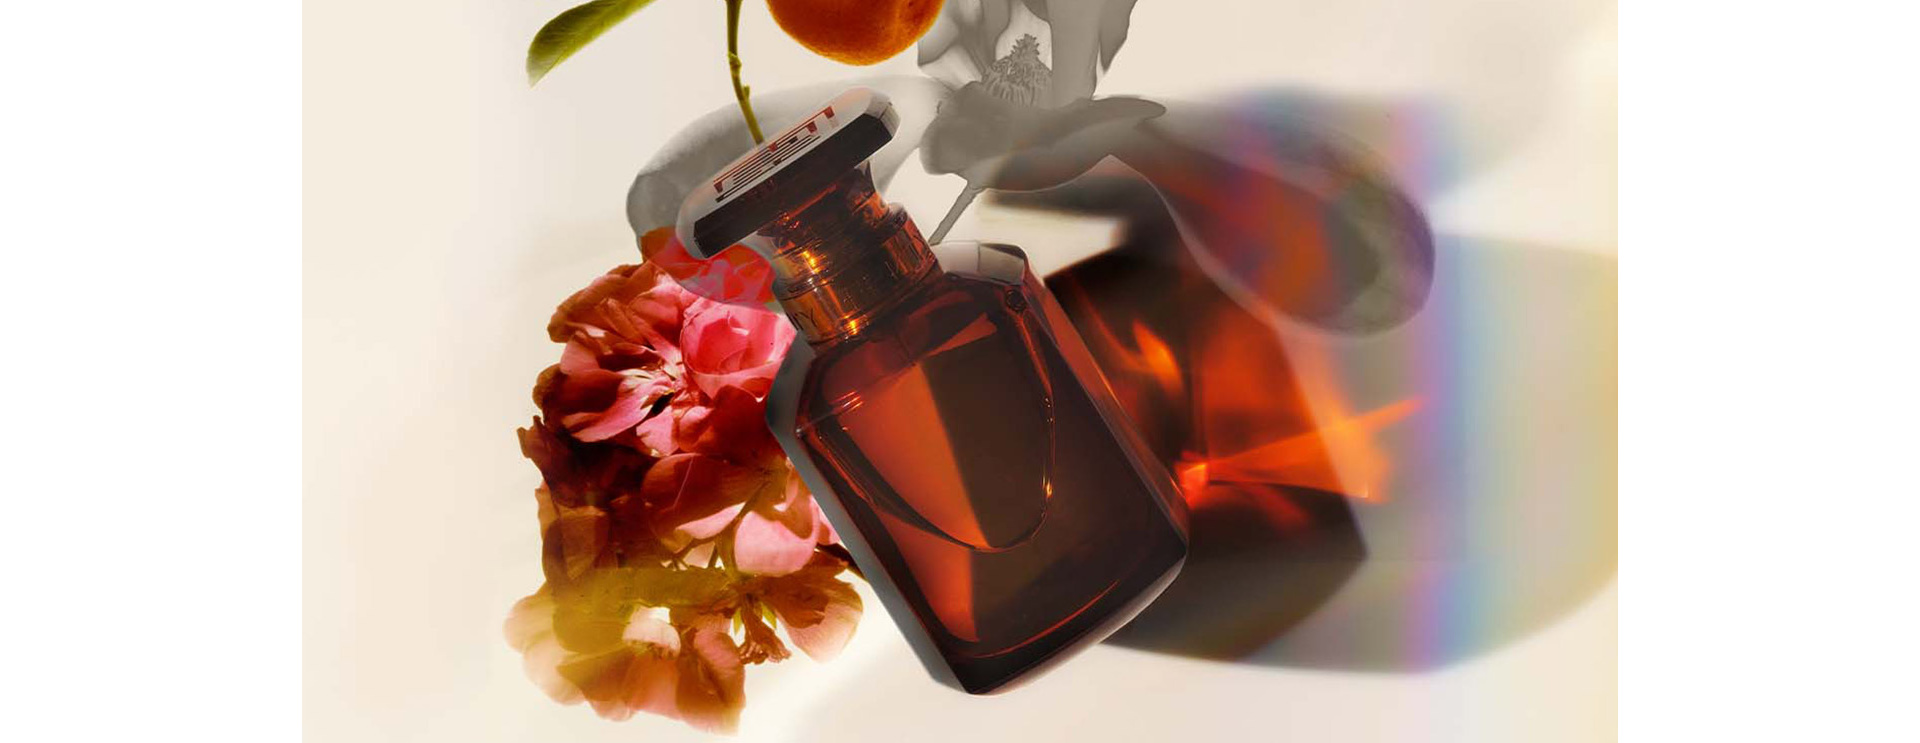 Make Fenty Eau de Parfum your signature fragrance